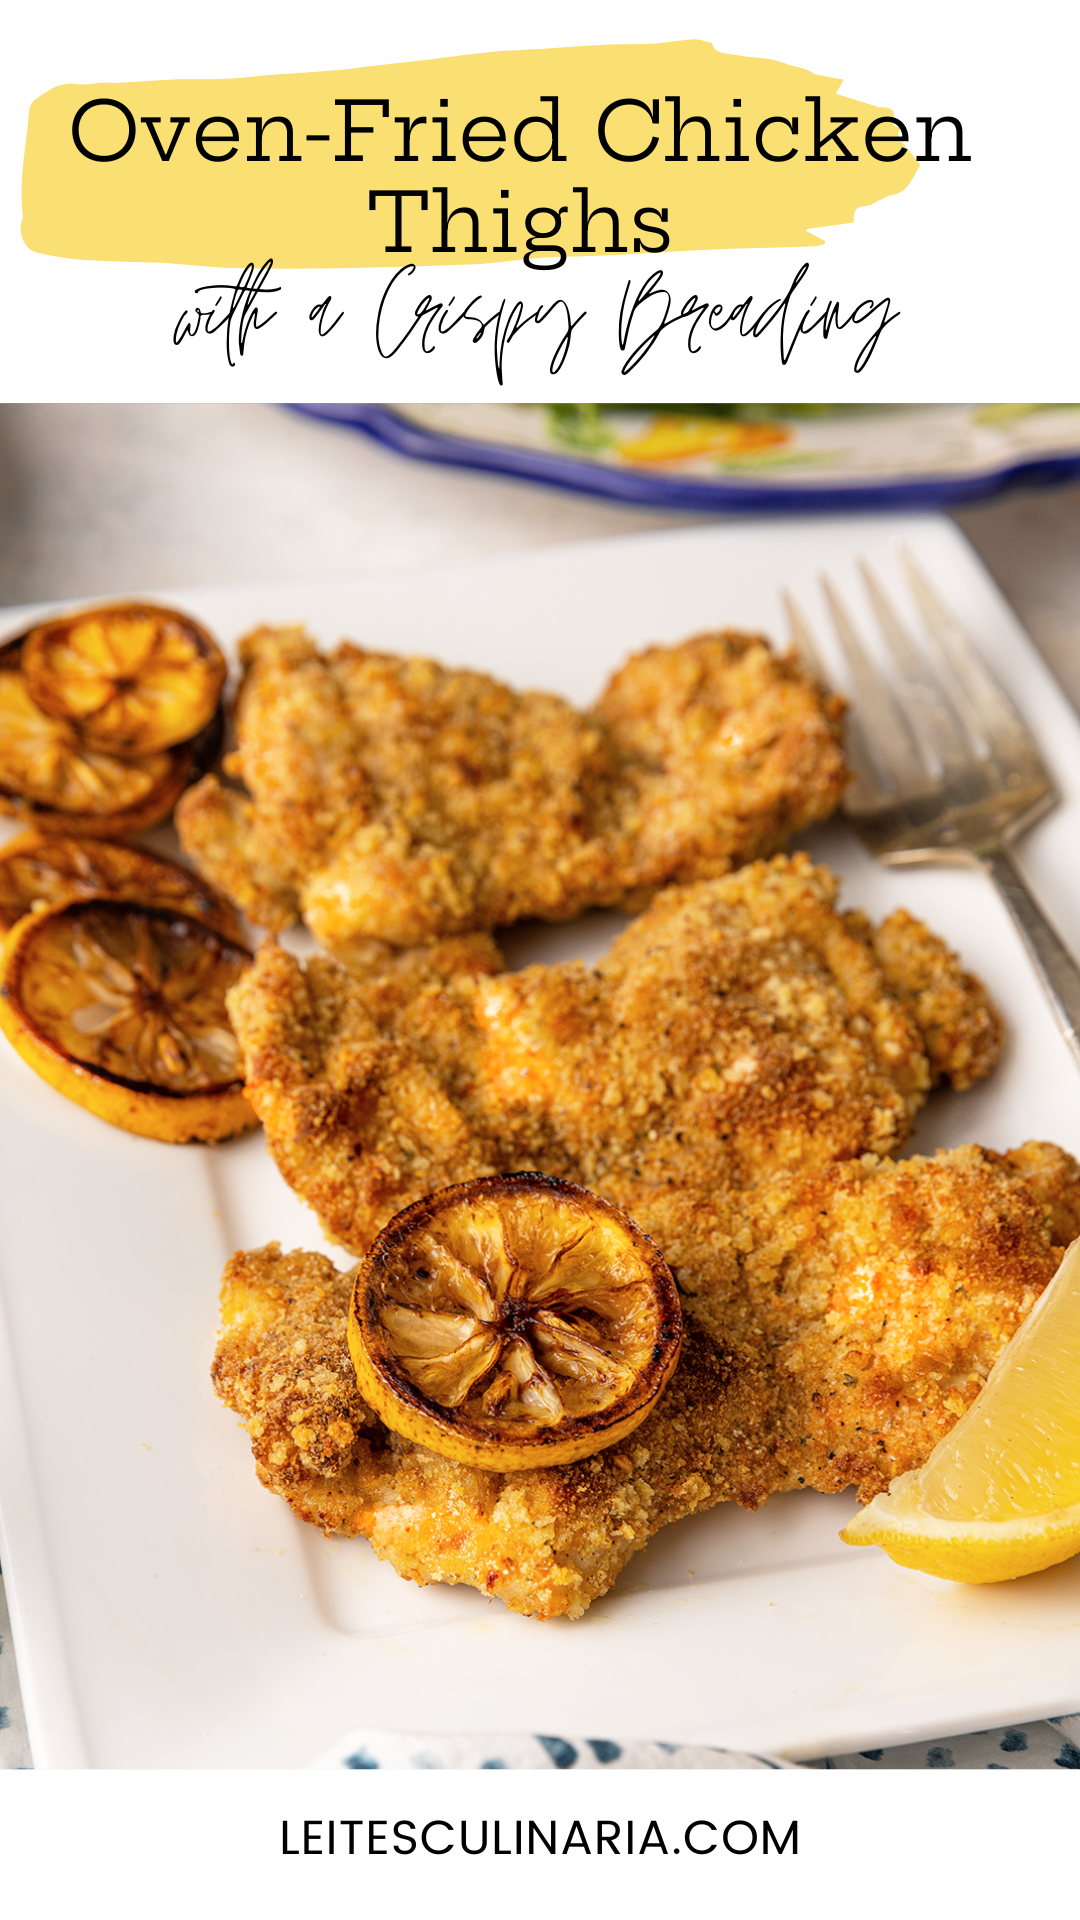 ثلاثة أفخاذ دجاج بالبقسماط على طبق مع شرائح الليمون المحمص.